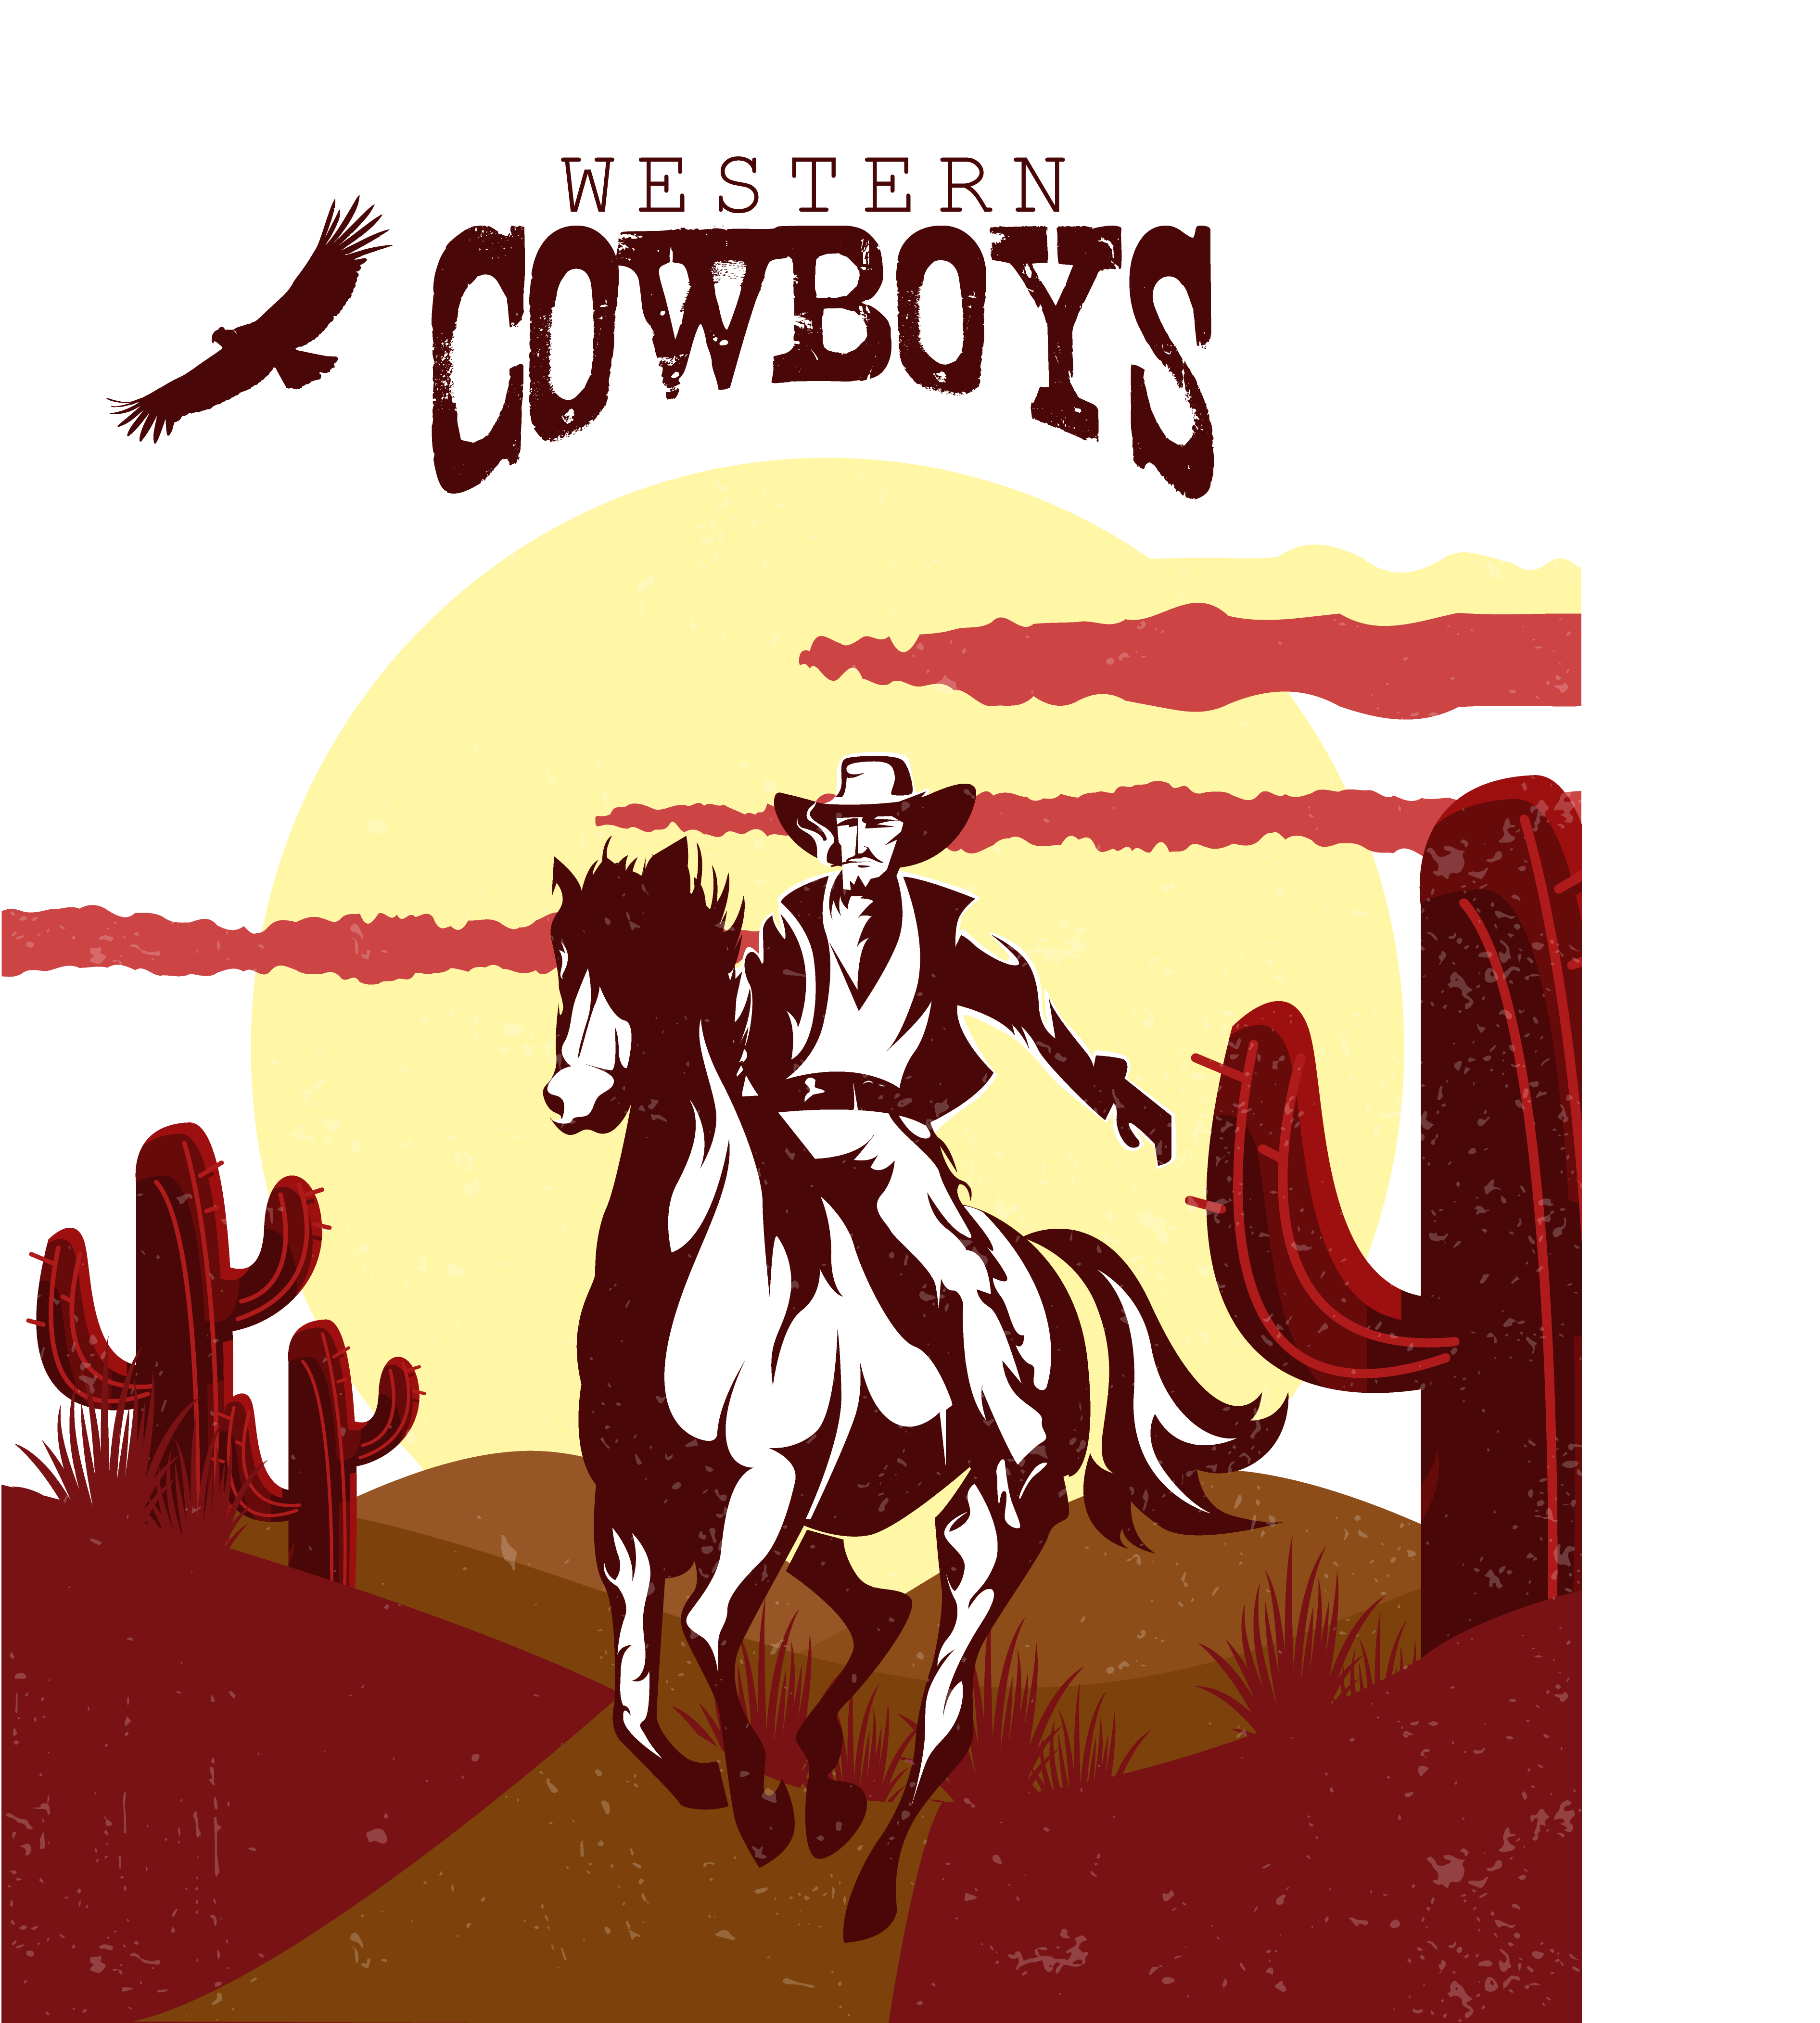 Cowboy Western American frontier Illustration.